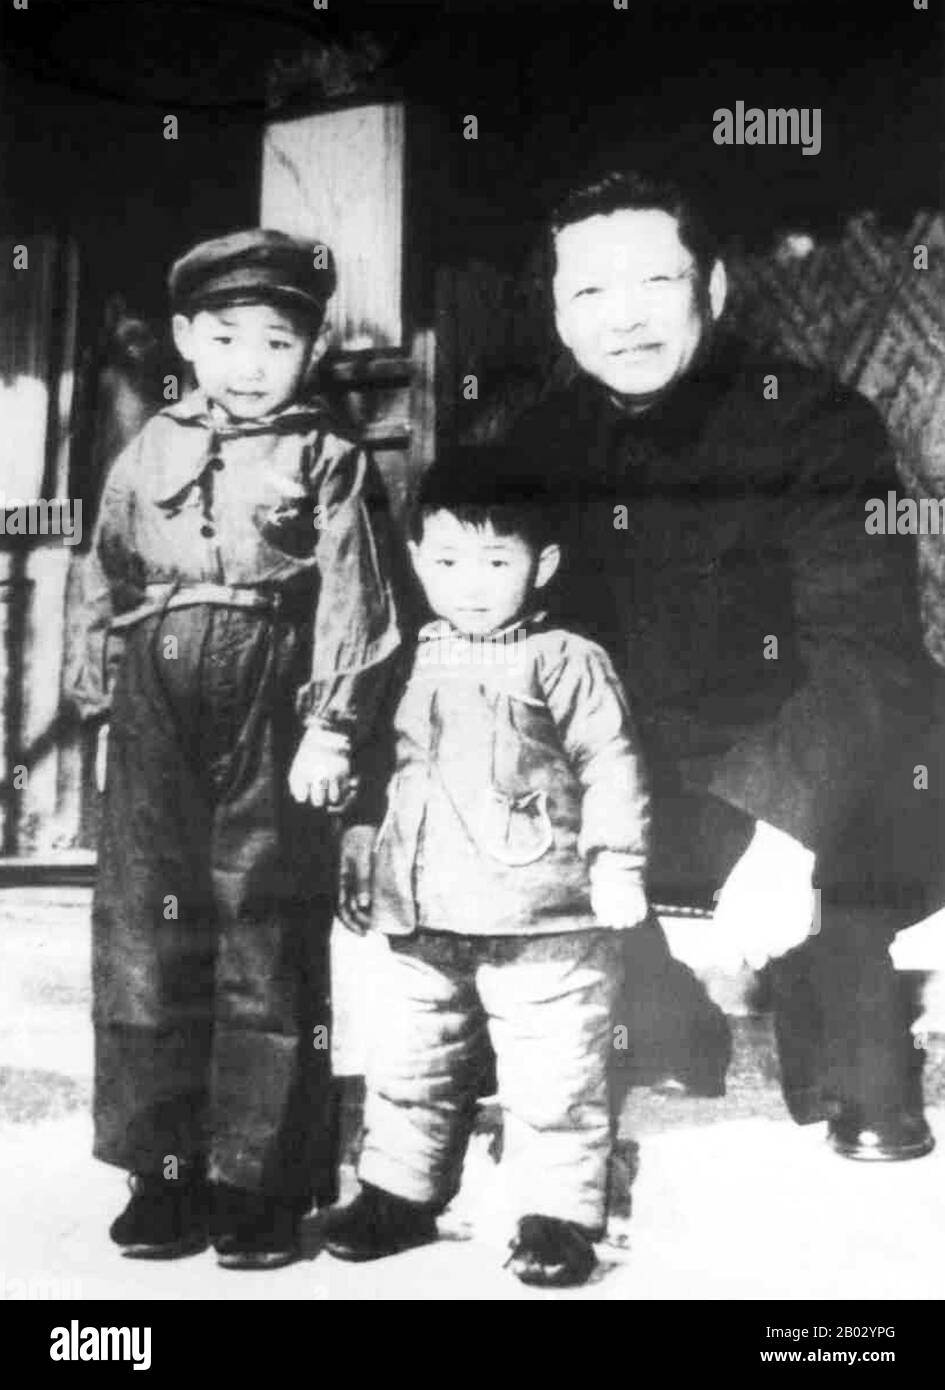 XI Zhongxun (15. Oktober 1913 - 24. Mai 2002) war ein kommunistischer Revolutionär und politischer Führer in der Volksrepublik China. Er gilt als eine der ersten Generation der chinesischen Führung. XI Jinping, geboren am 15. Juni 1953) ist Generalsekretär der Kommunistischen Partei Chinas, Präsident der Volksrepublik China und Vorsitzender der zentralen Militärkommission. Stockfoto